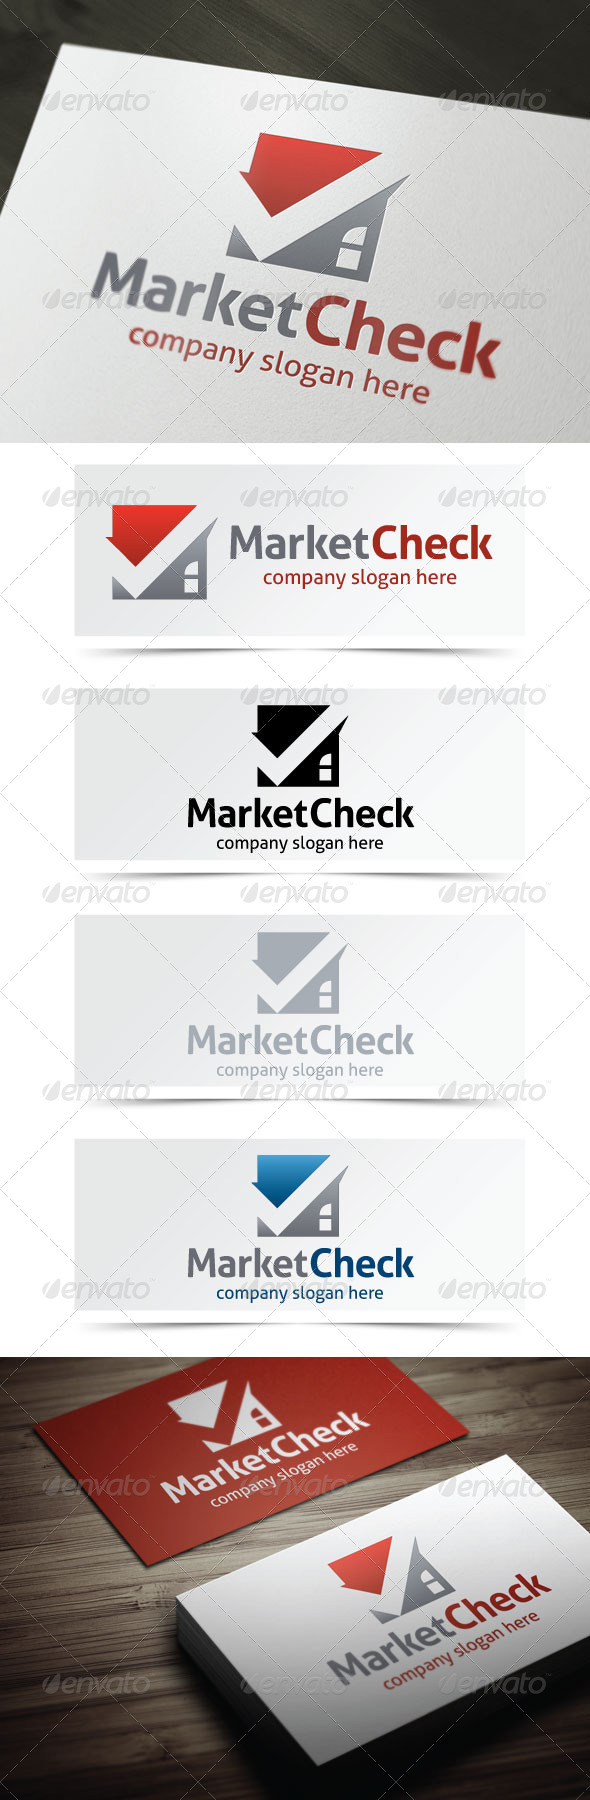 Market Check